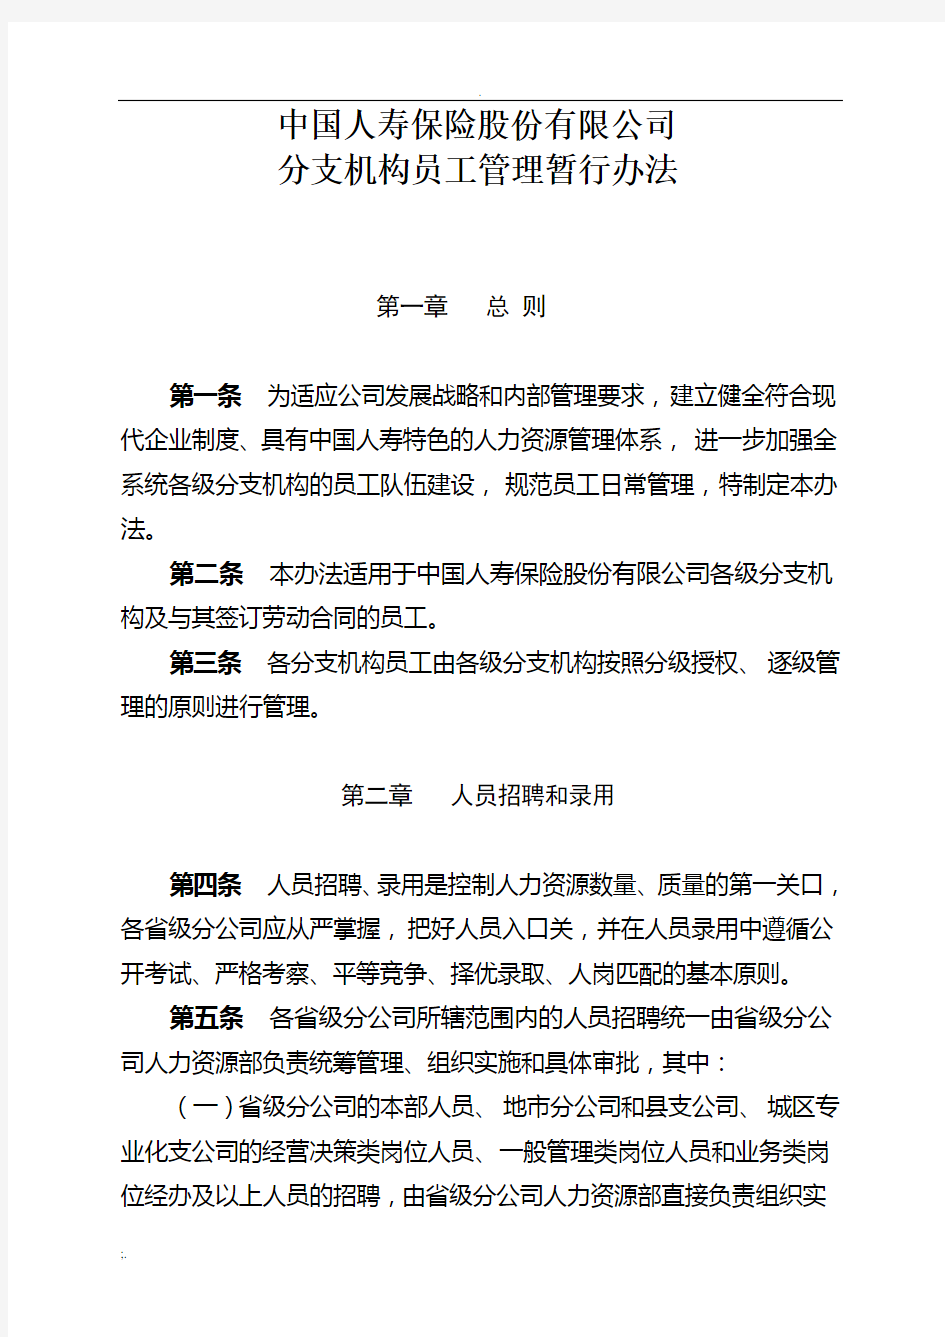 中国人寿保险股份有限公司分支机构员工管理暂行办法